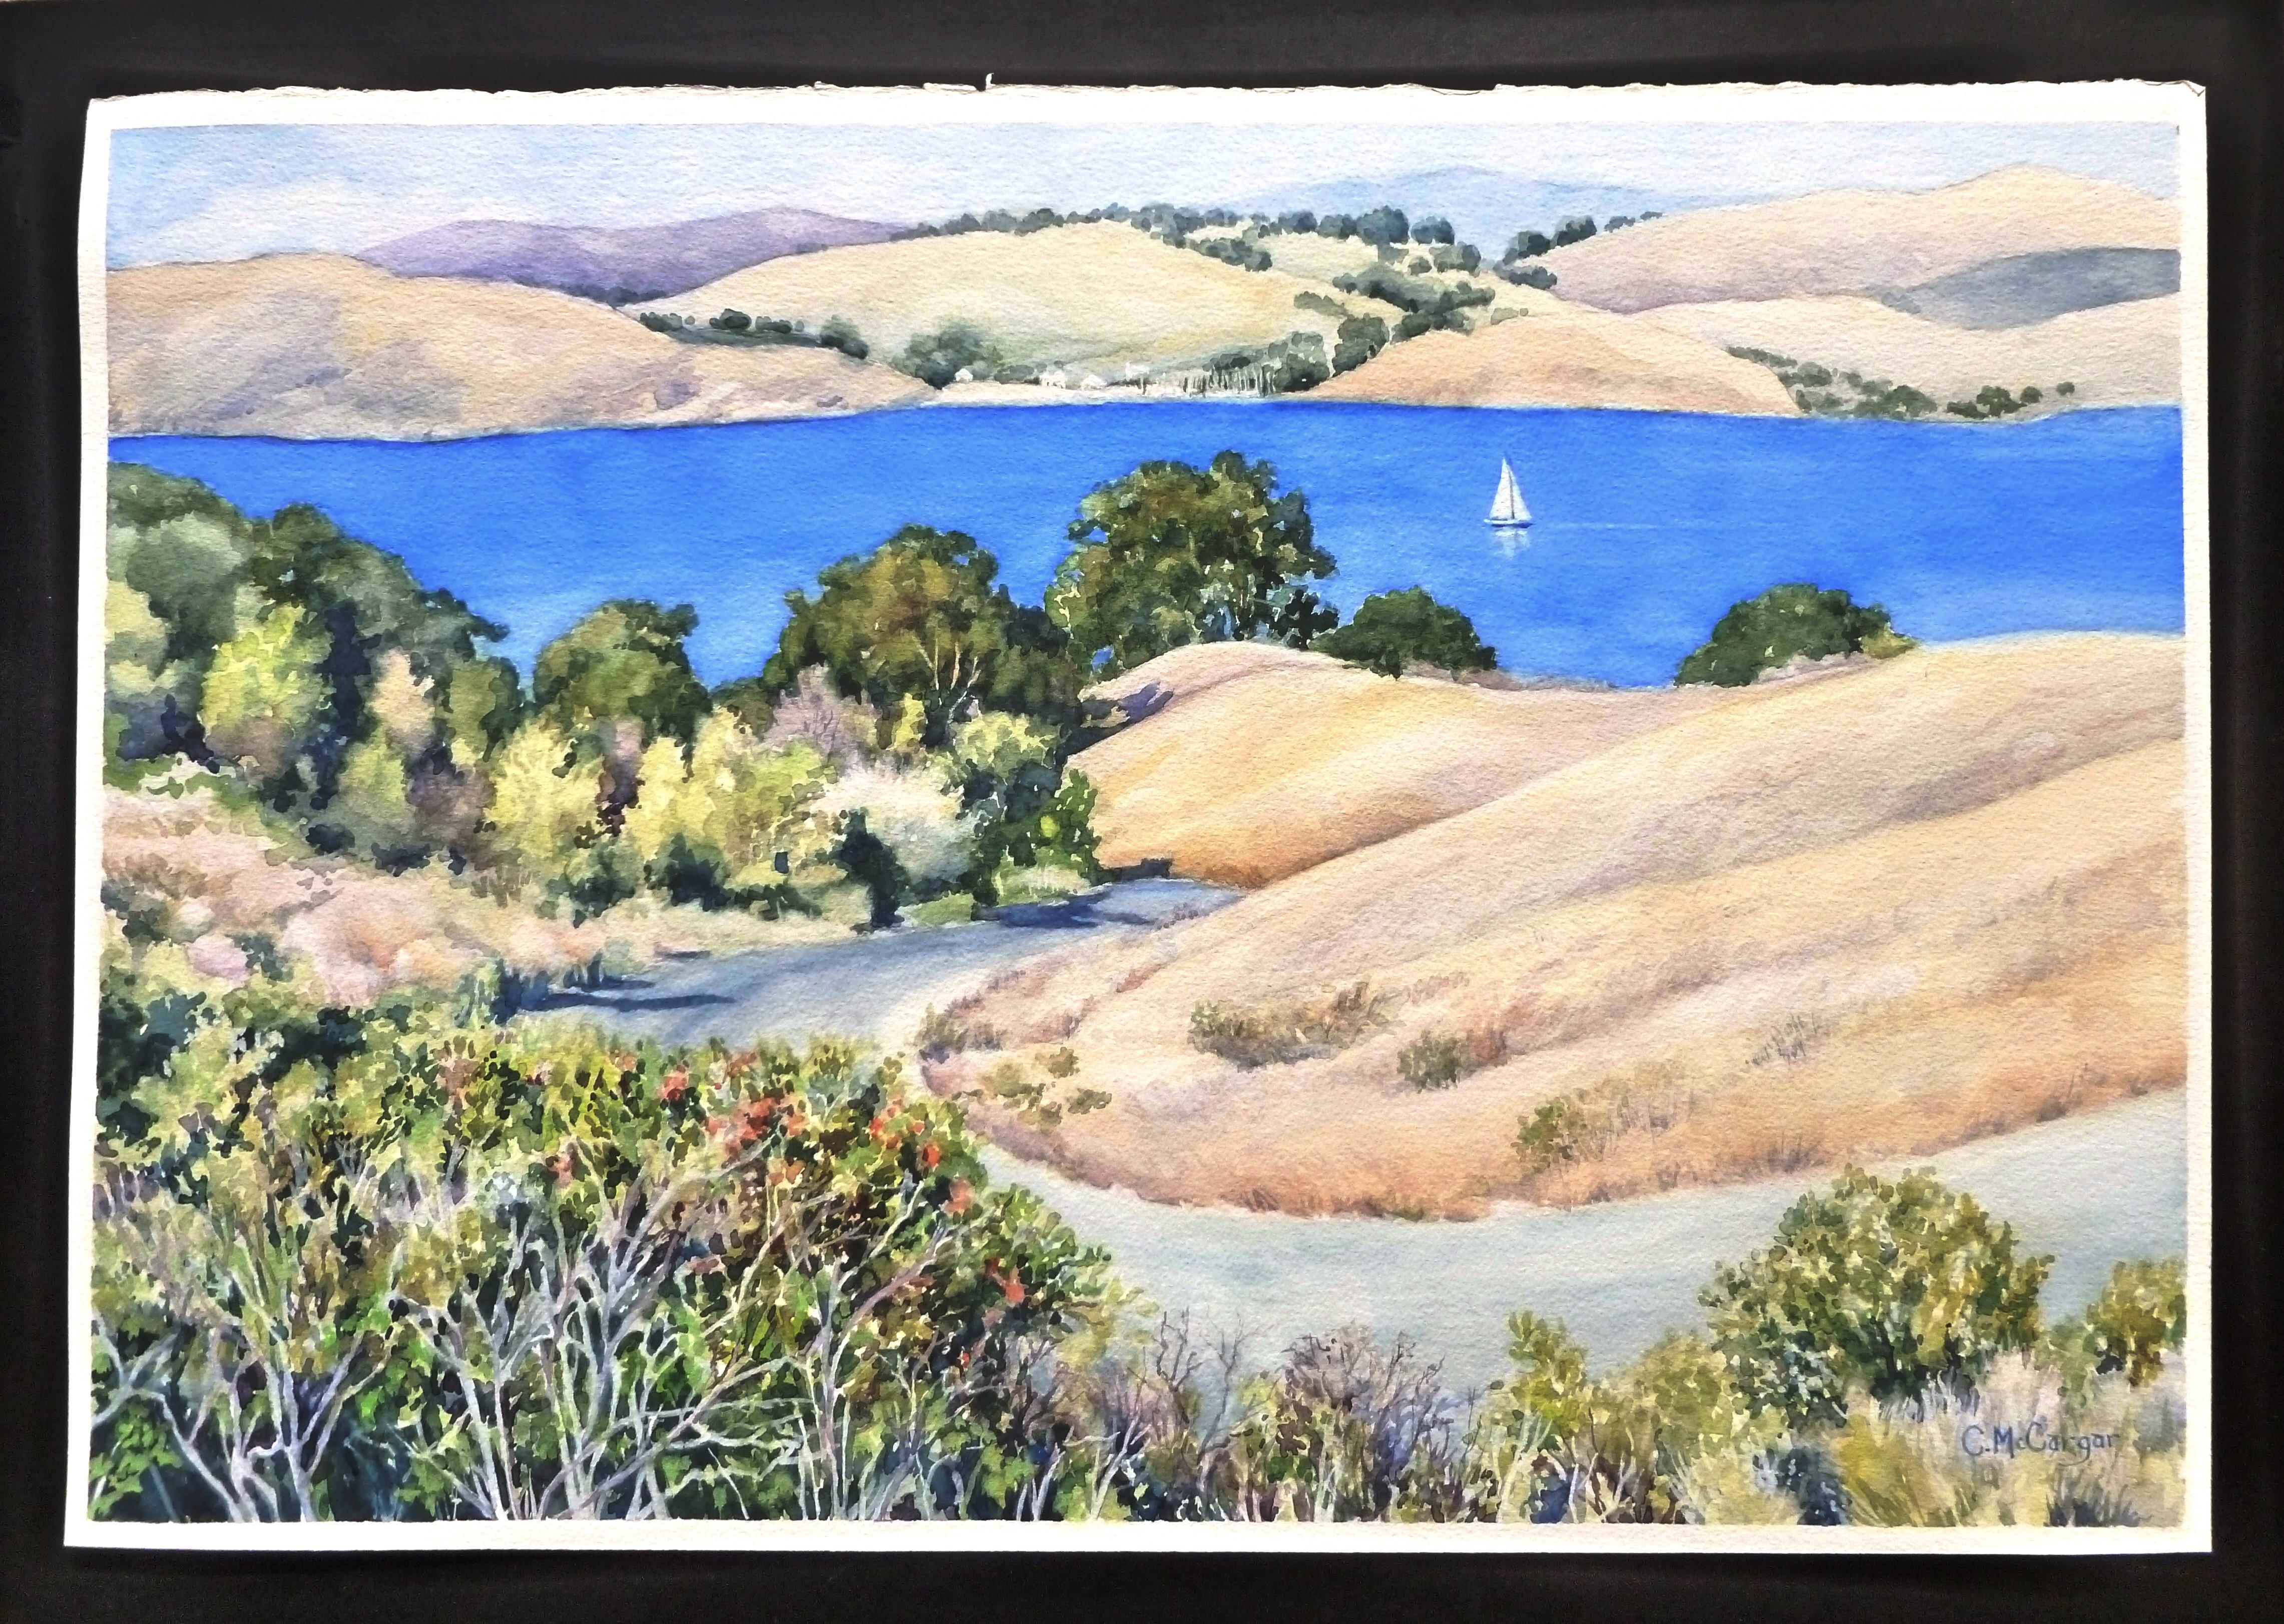 <p>Kommentare des Künstlers<br>Ein Herbstpanorama mit Blick auf sanfte Hügel und ein Segelboot in der Bucht von Nordkalifornien. Das blaue Wasser bietet einen erfrischenden Anblick in der grasbewachsenen, strohfarbenen Landschaft. 